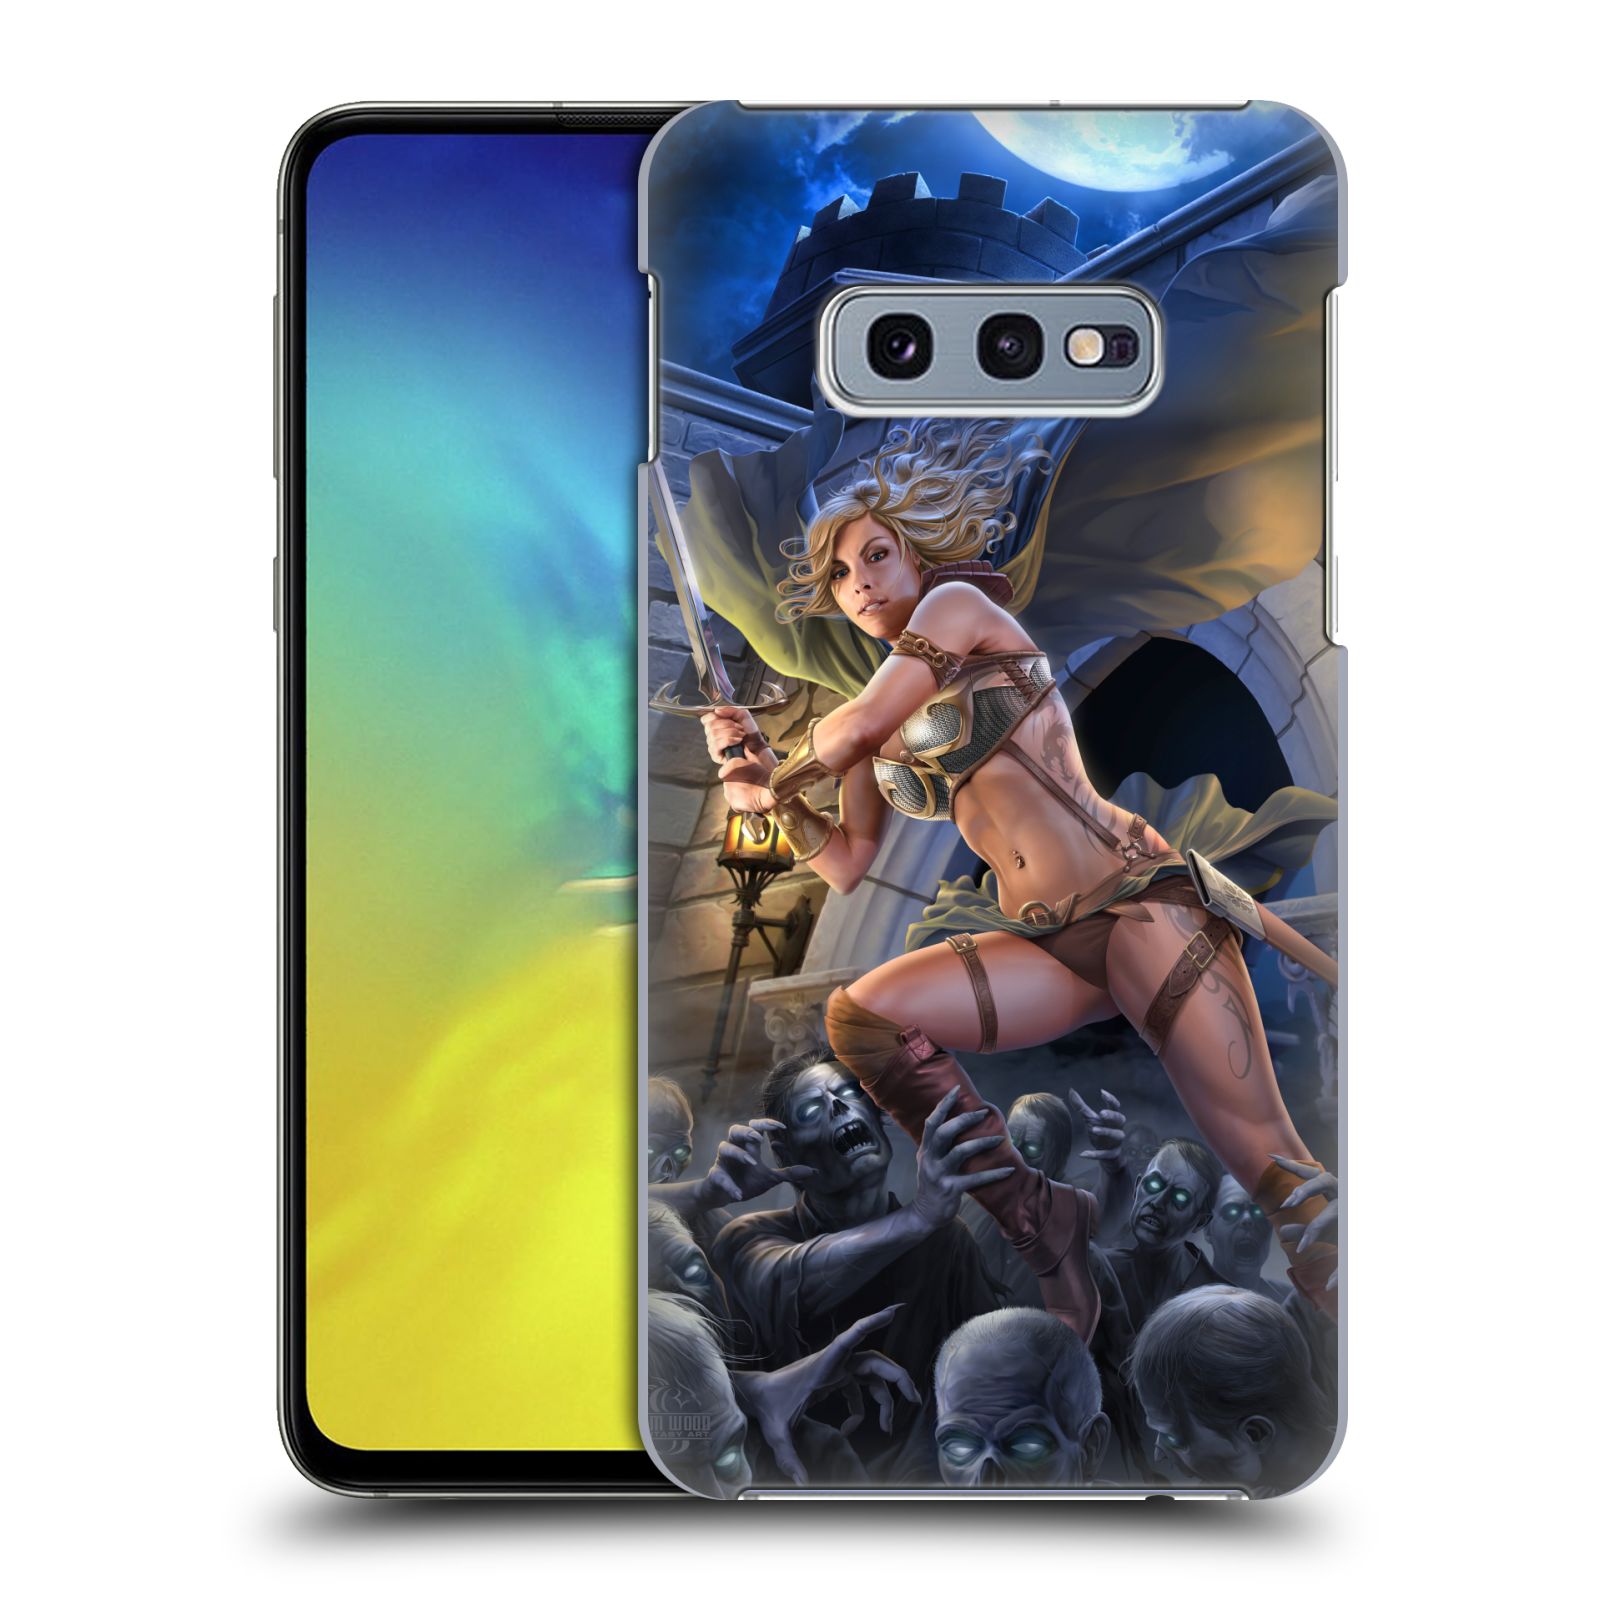 Pouzdro na mobil Samsung Galaxy S10e - HEAD CASE - Fantasy kresby Tom Wood - Princezna bojovnice a zombies